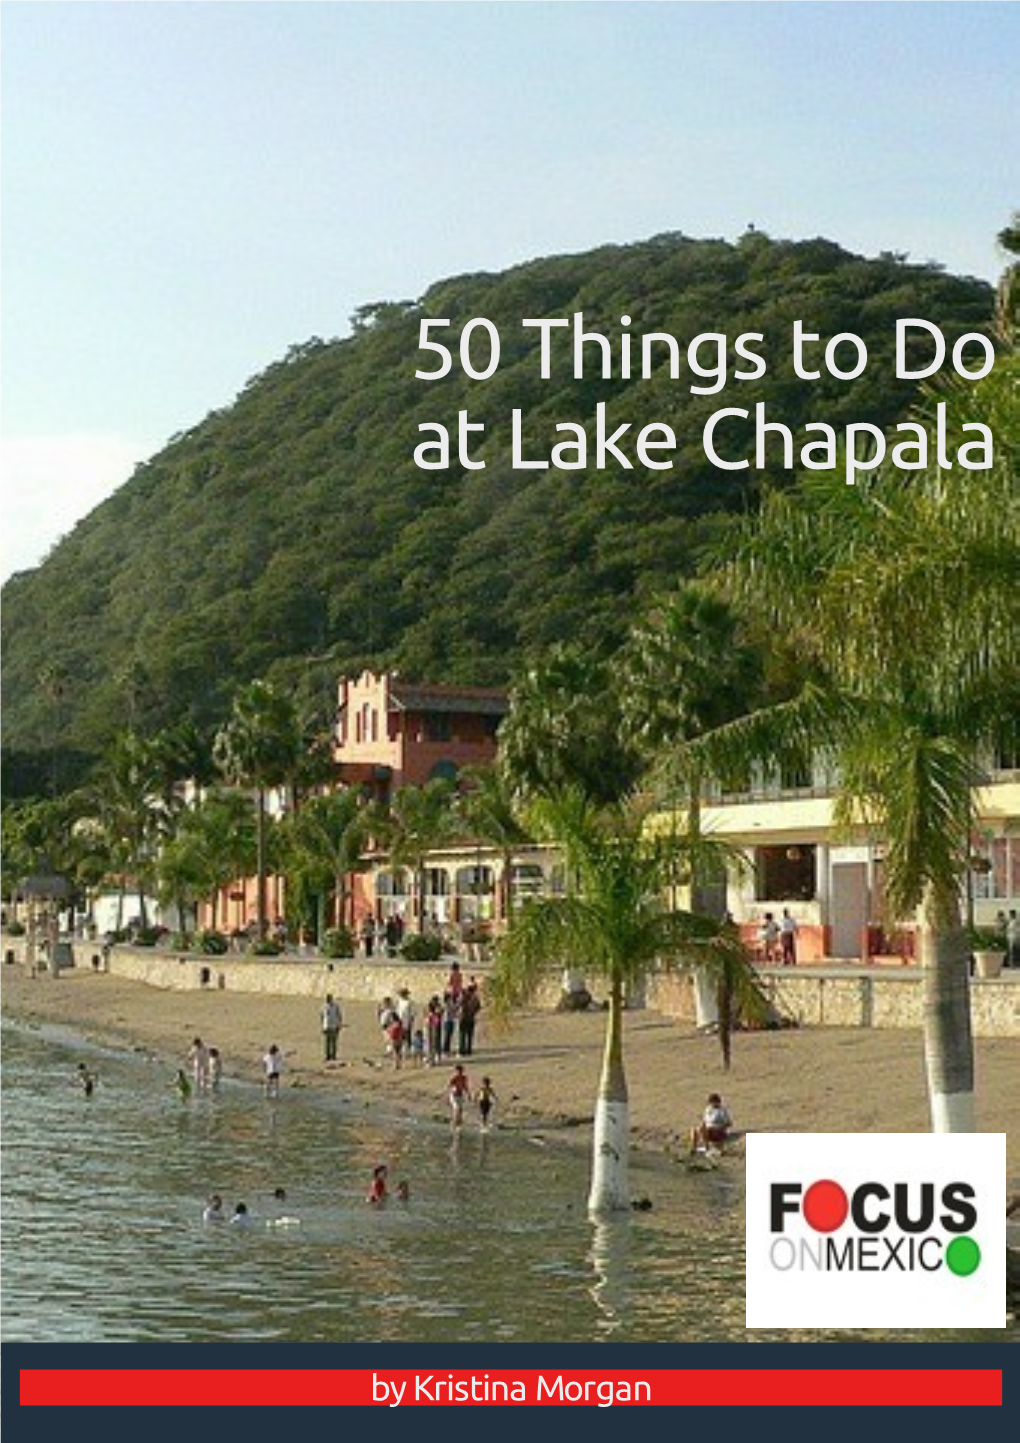 50 Things to Do at Lake Chapala